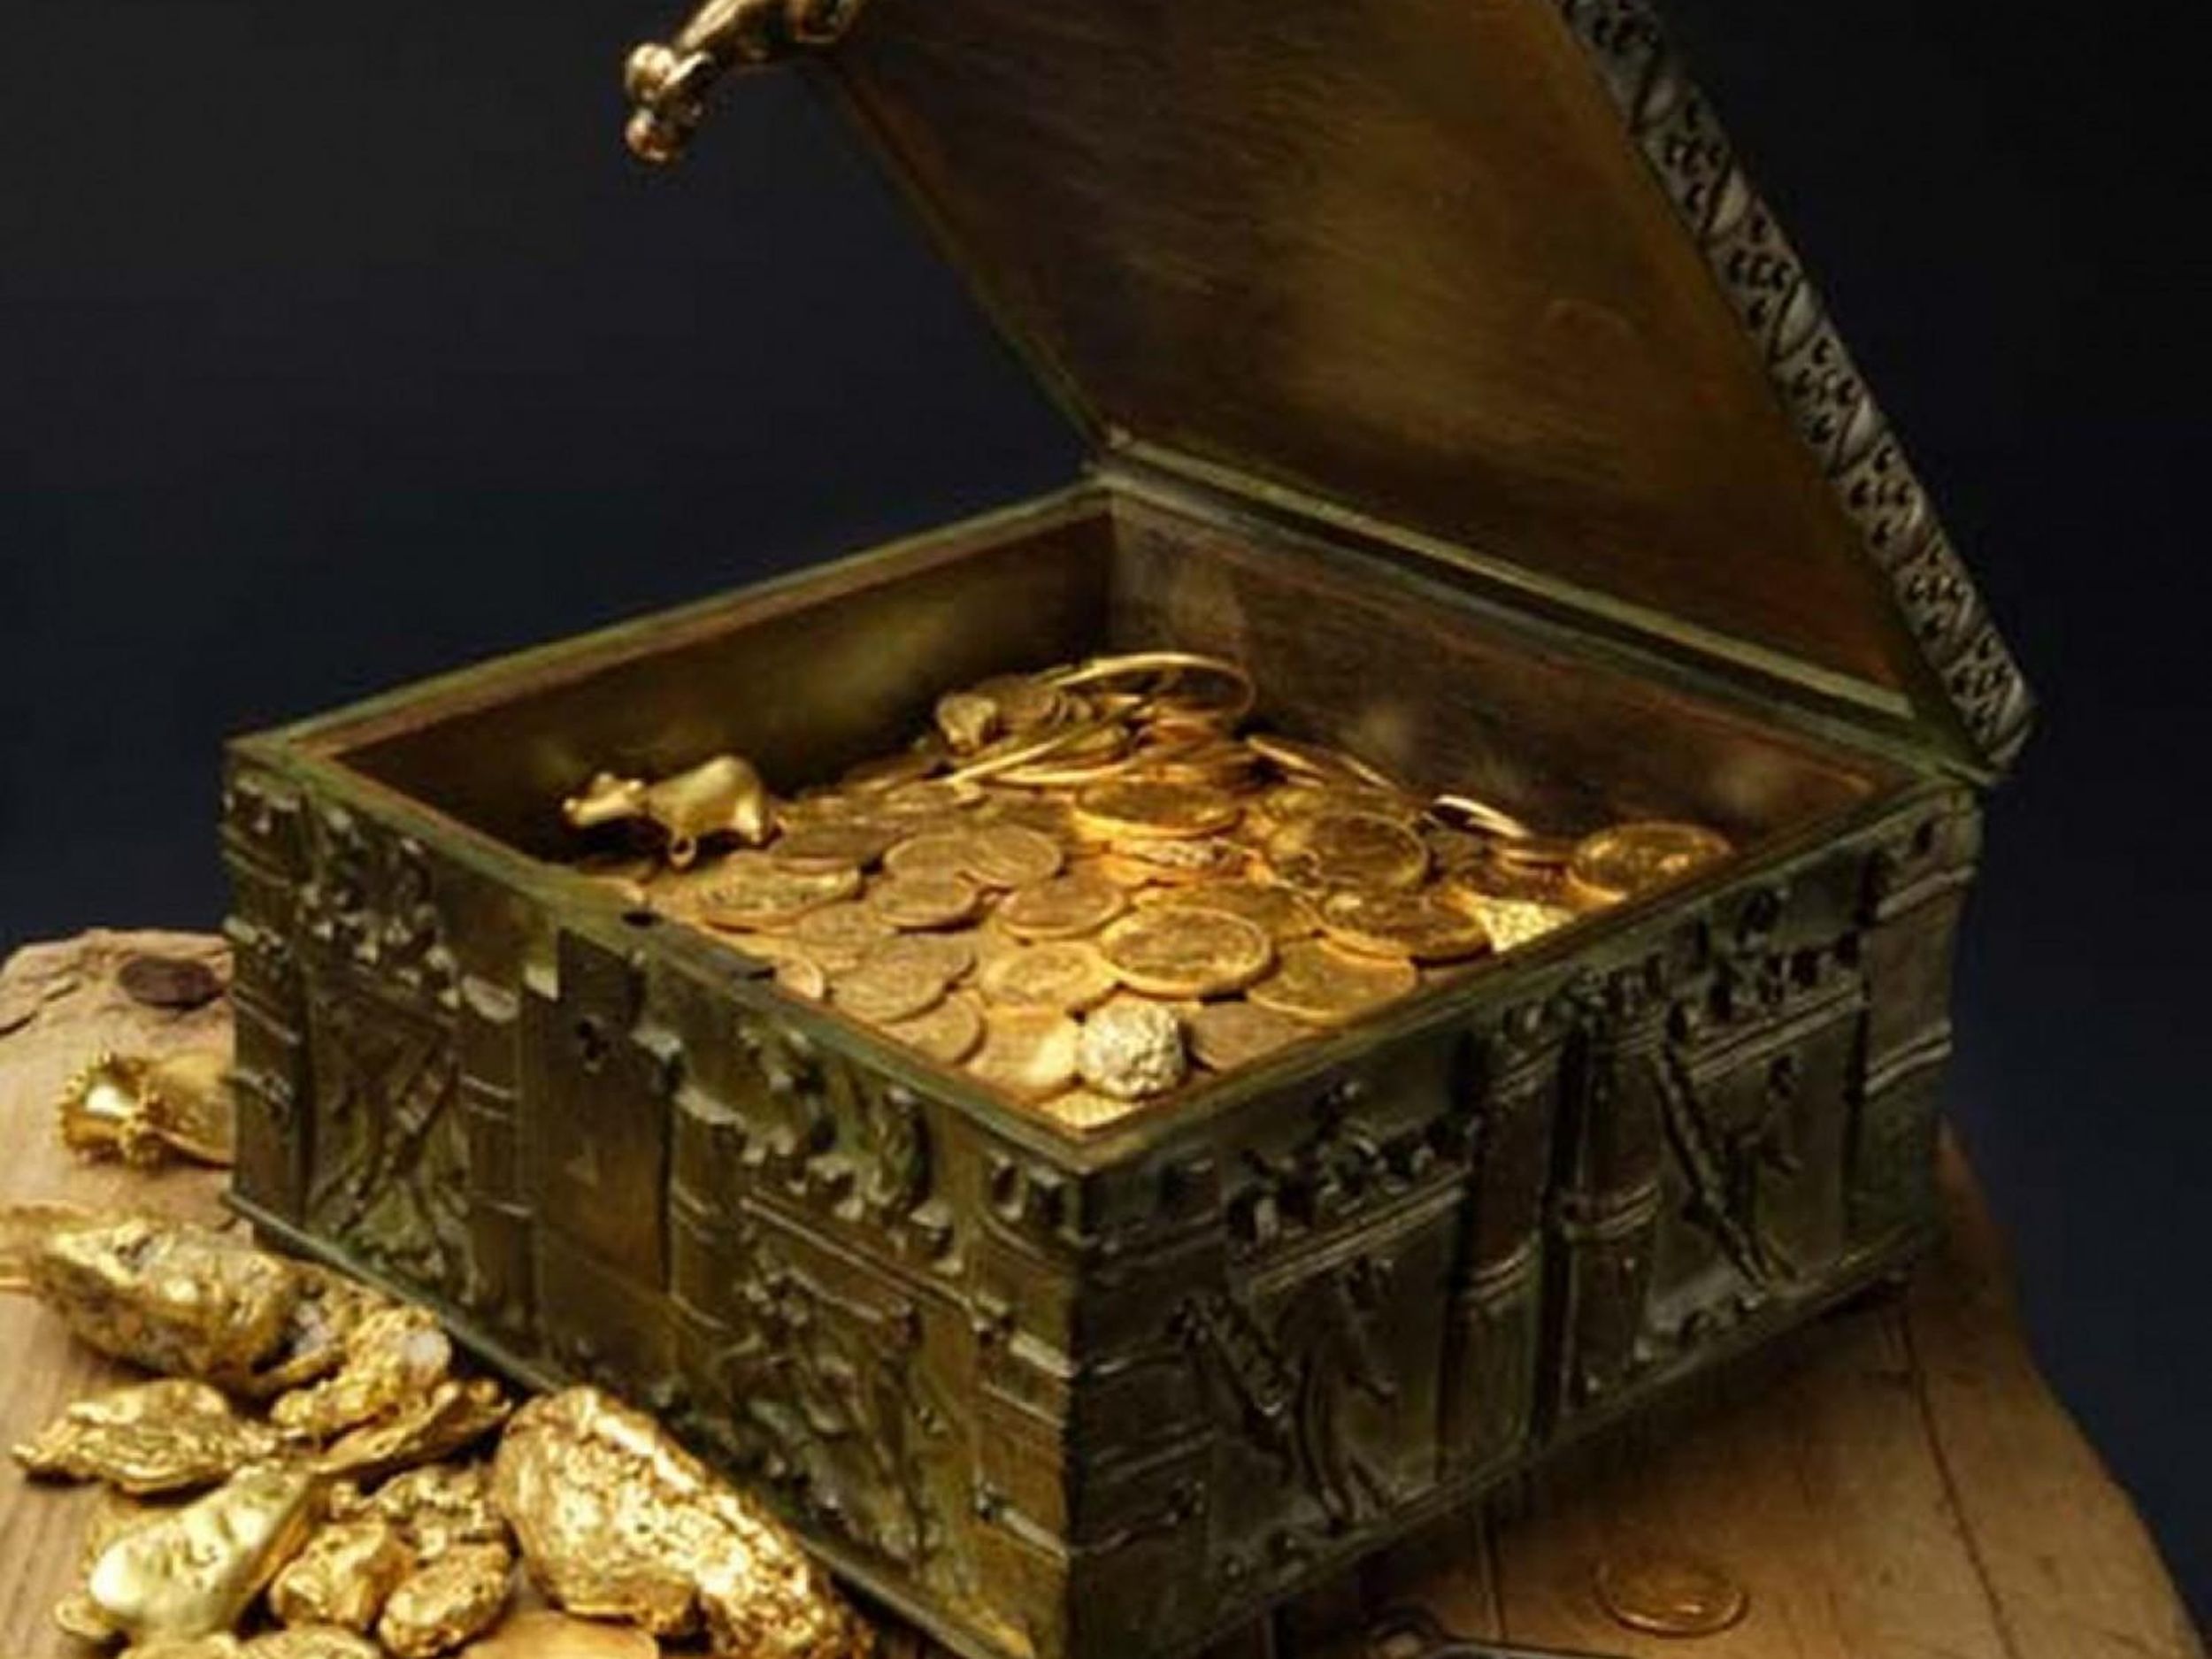 T treasure. Клад. Сундук с золотыми монетами. Сокровищница. Горы золота и драгоценностей.